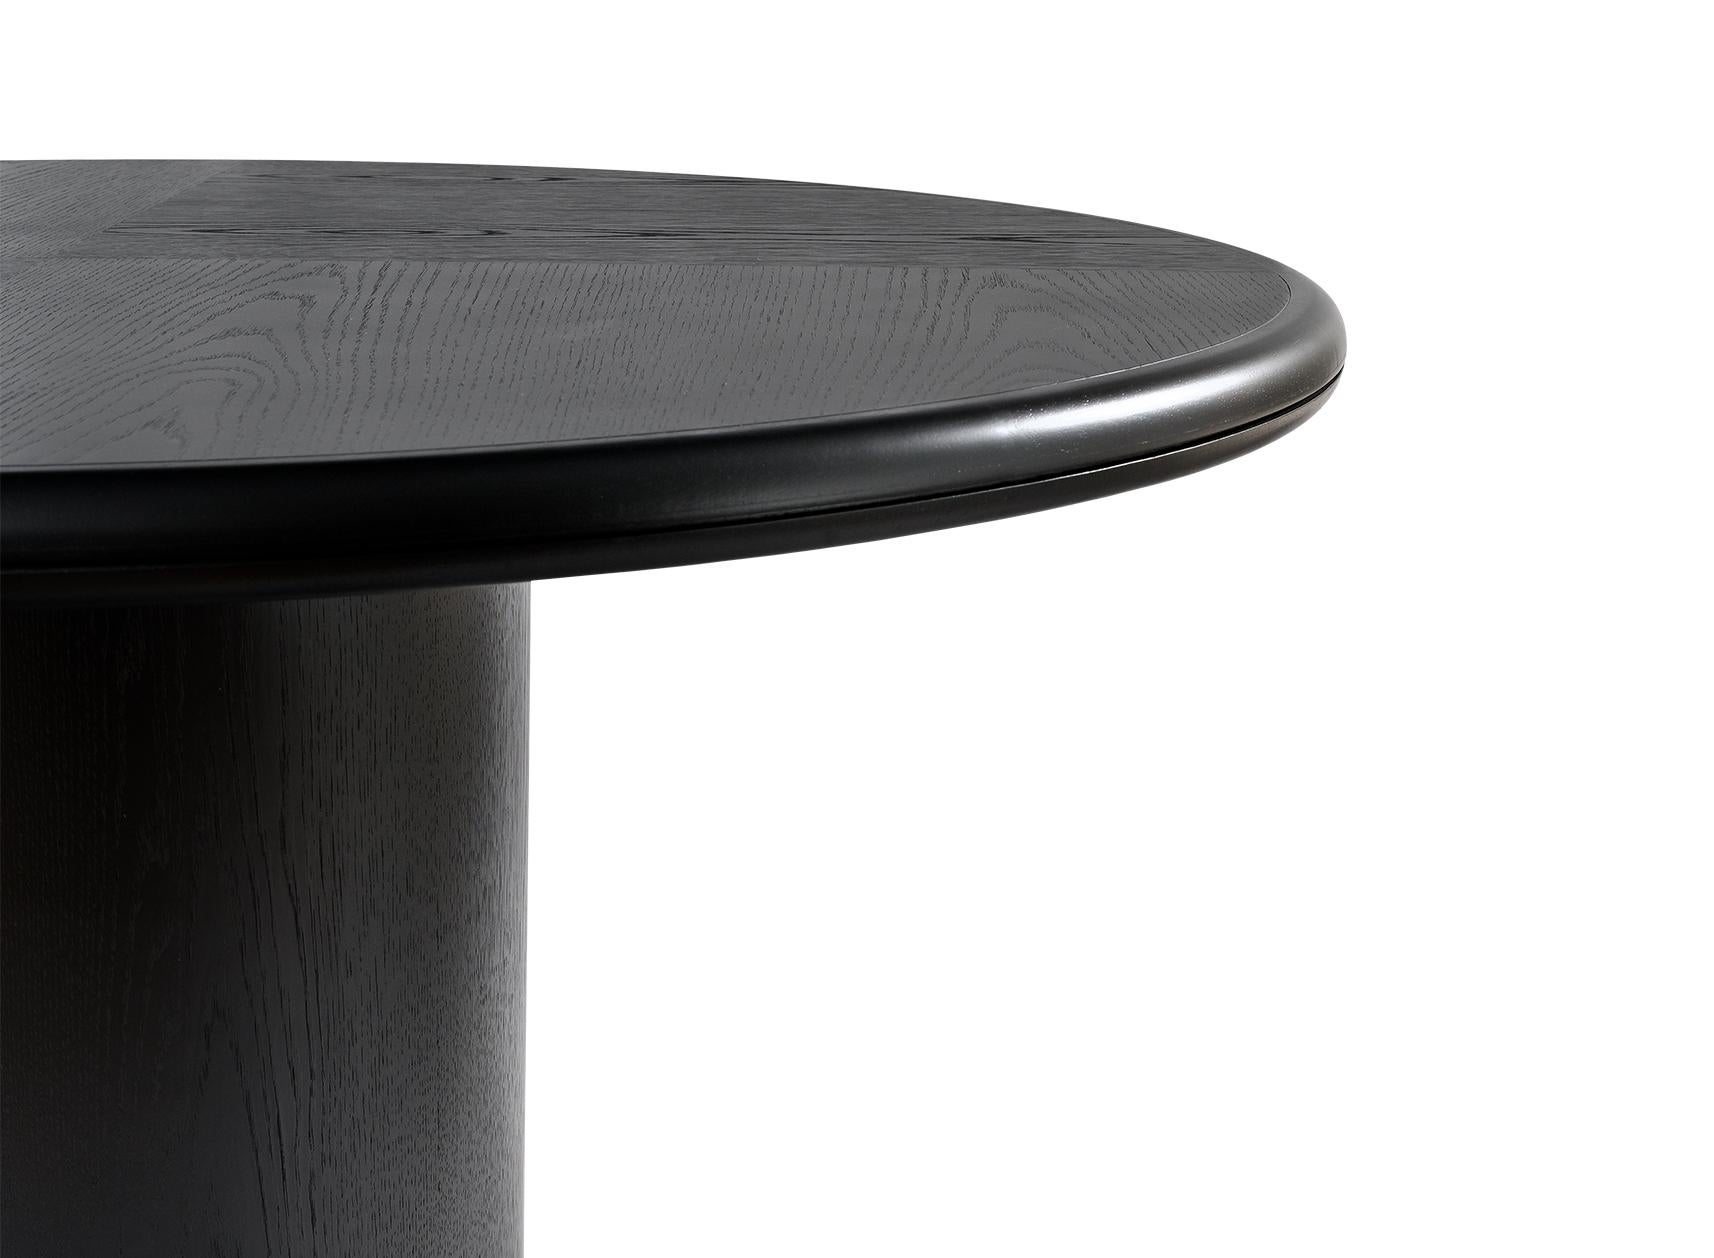 LUNE
Table de salle à manger ronde en chêne brossé noir.
Disponible en différentes dimensions.

Conçu par Buket Hoscan Bazman.